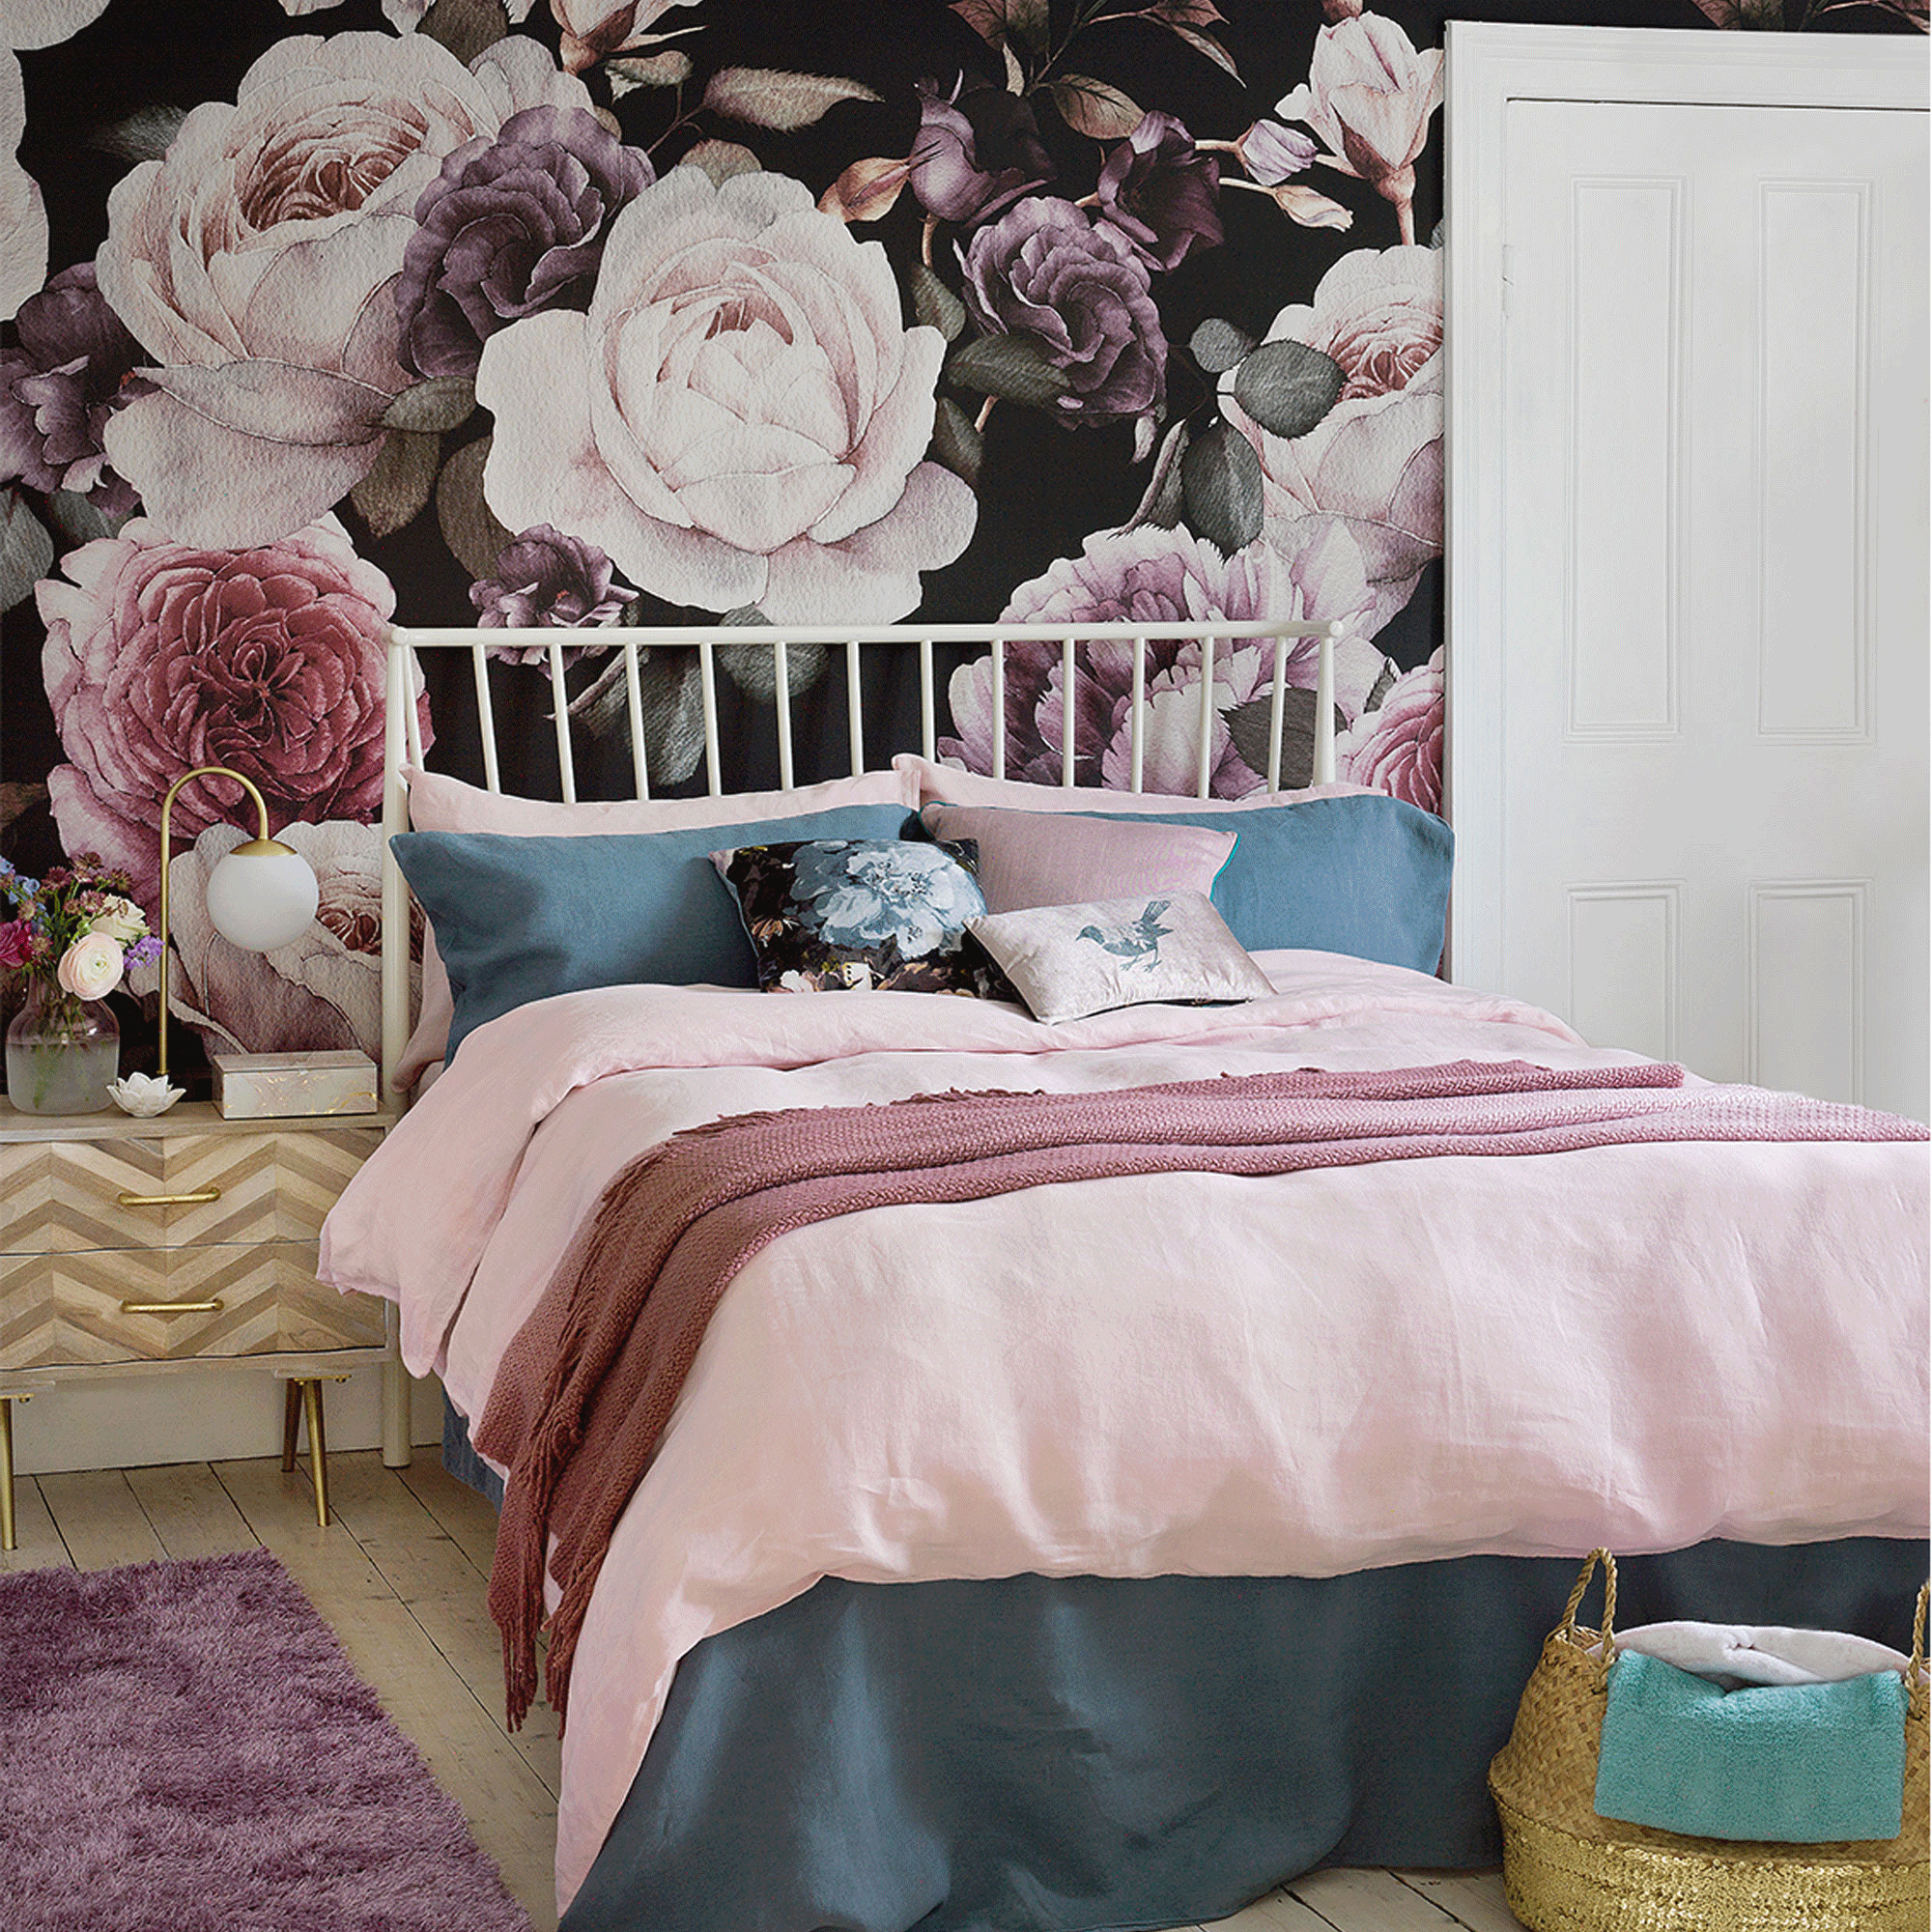 Floral wallpaper in bedroom